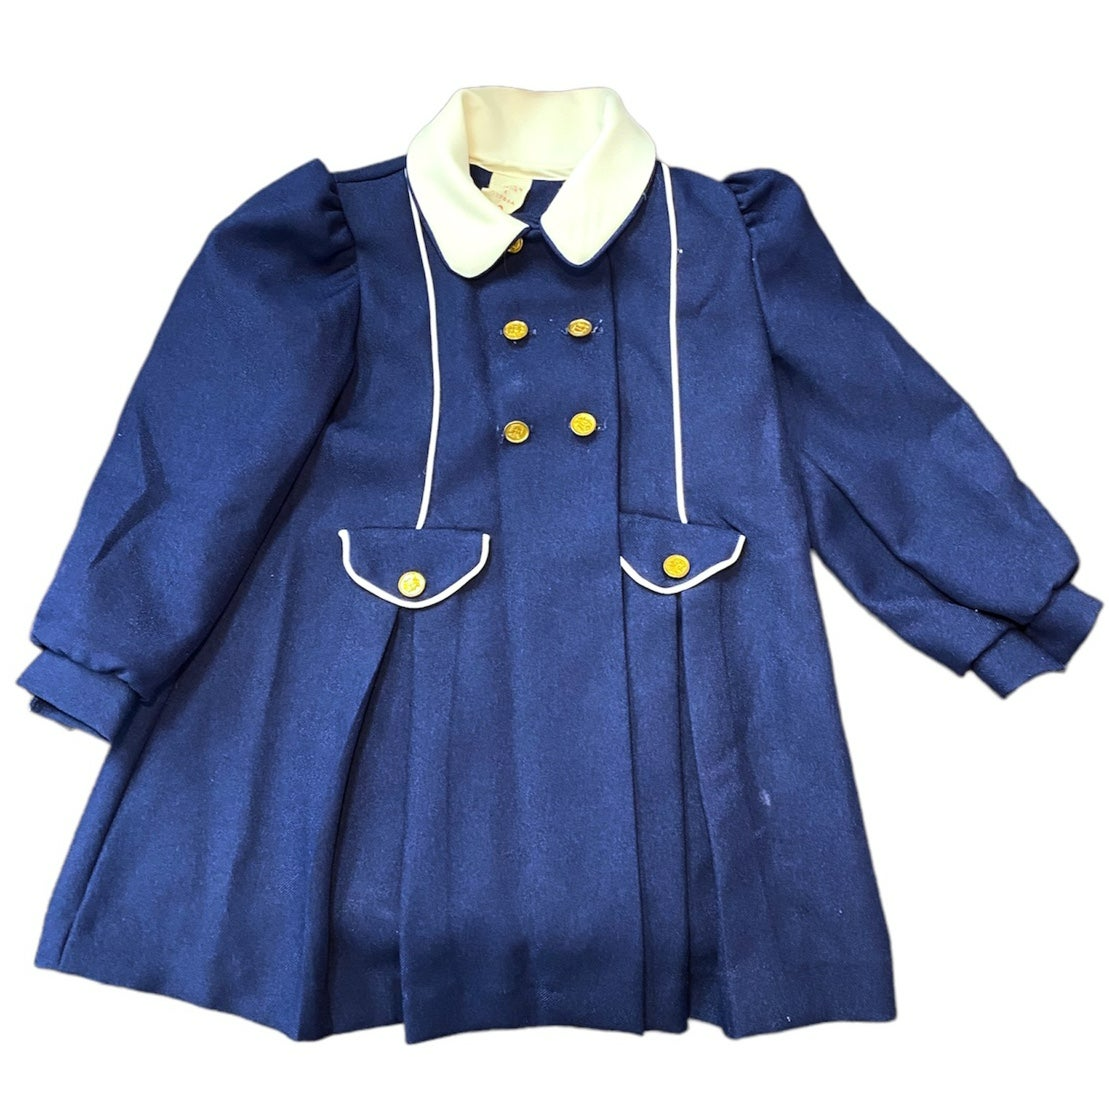 Size 4 girls vintage dress & coat bundle